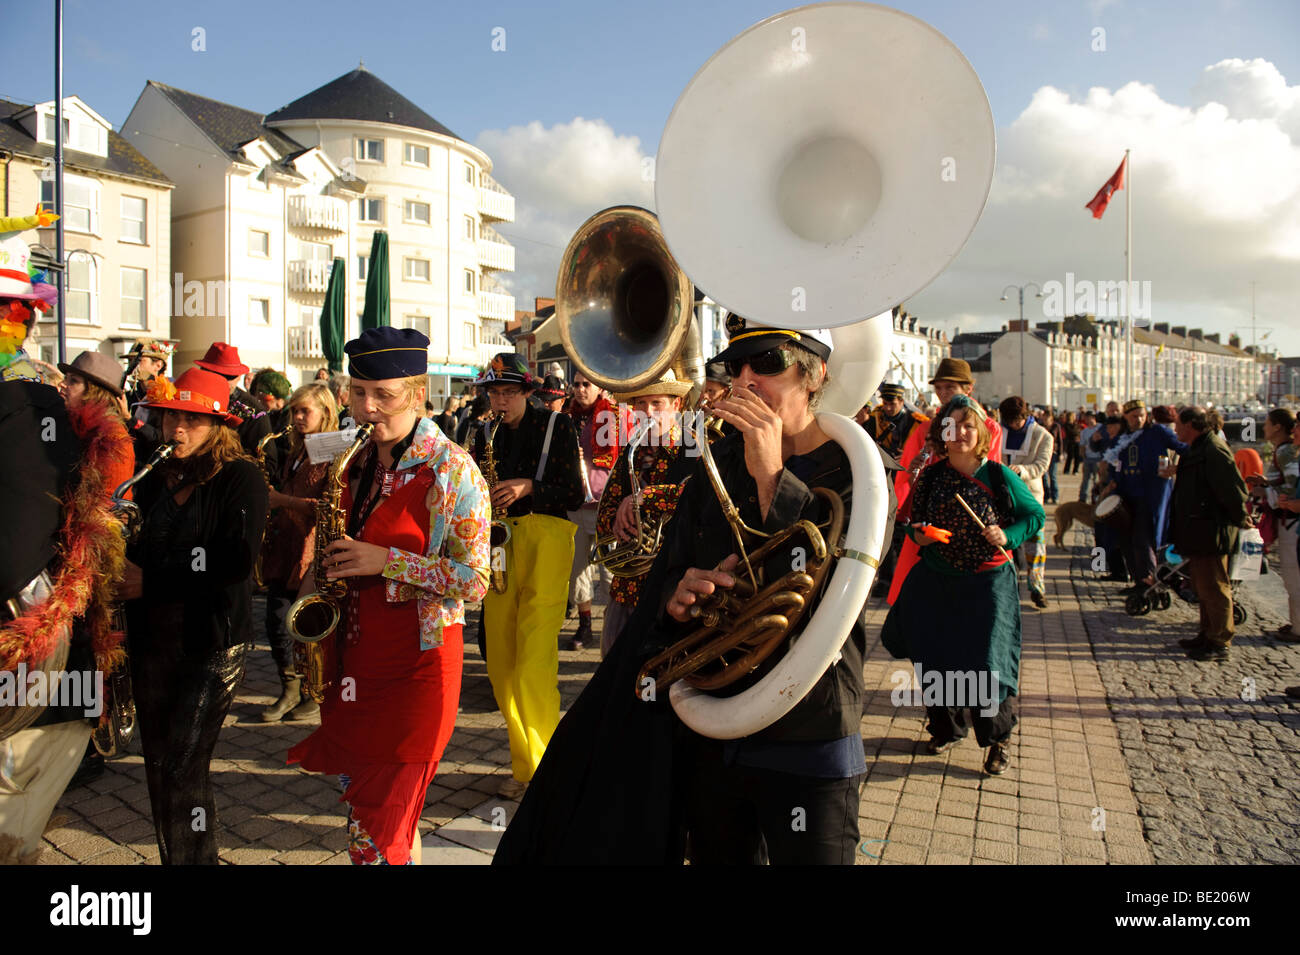 Musiciens de la Fanfare de Propere fanfare belge d'effectuer sur la promenade, Aberystwyth Wales UK Banque D'Images